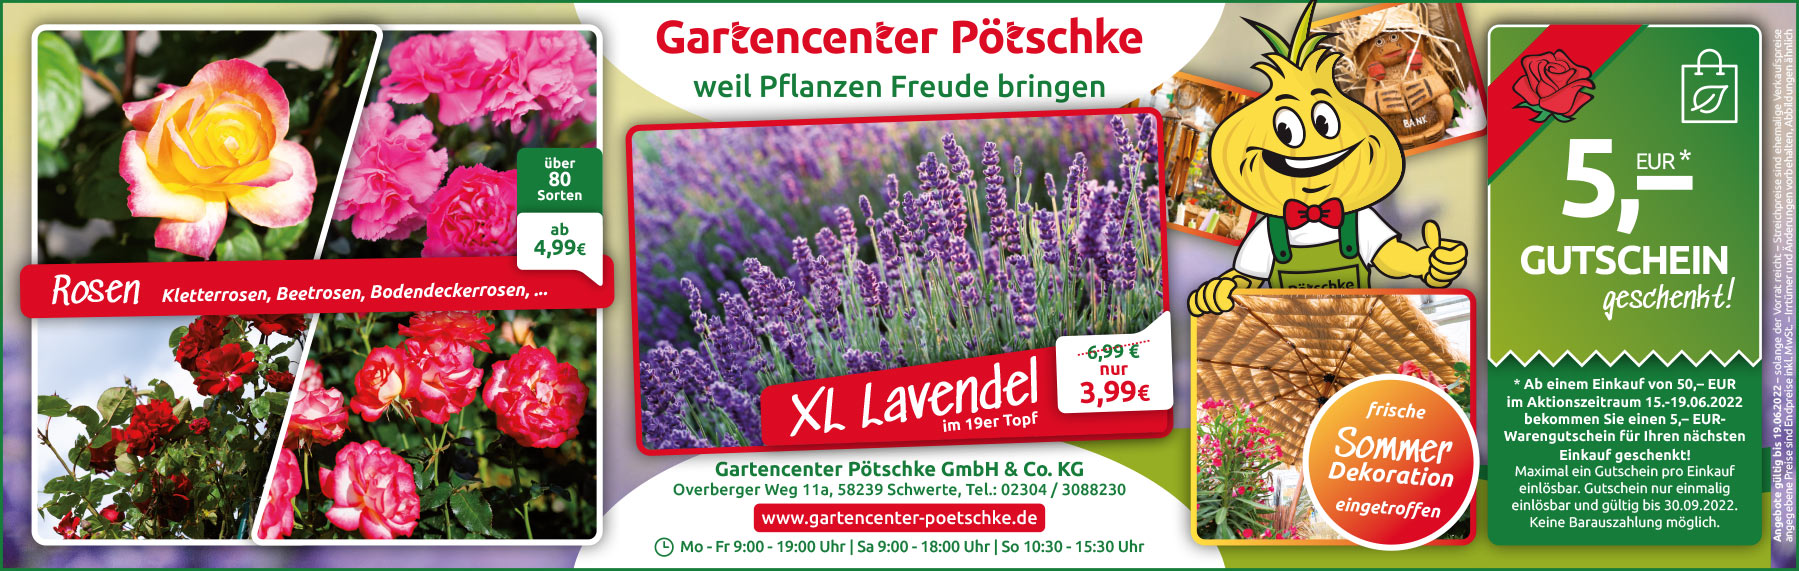 Werbeanzeige XXL Lavendel